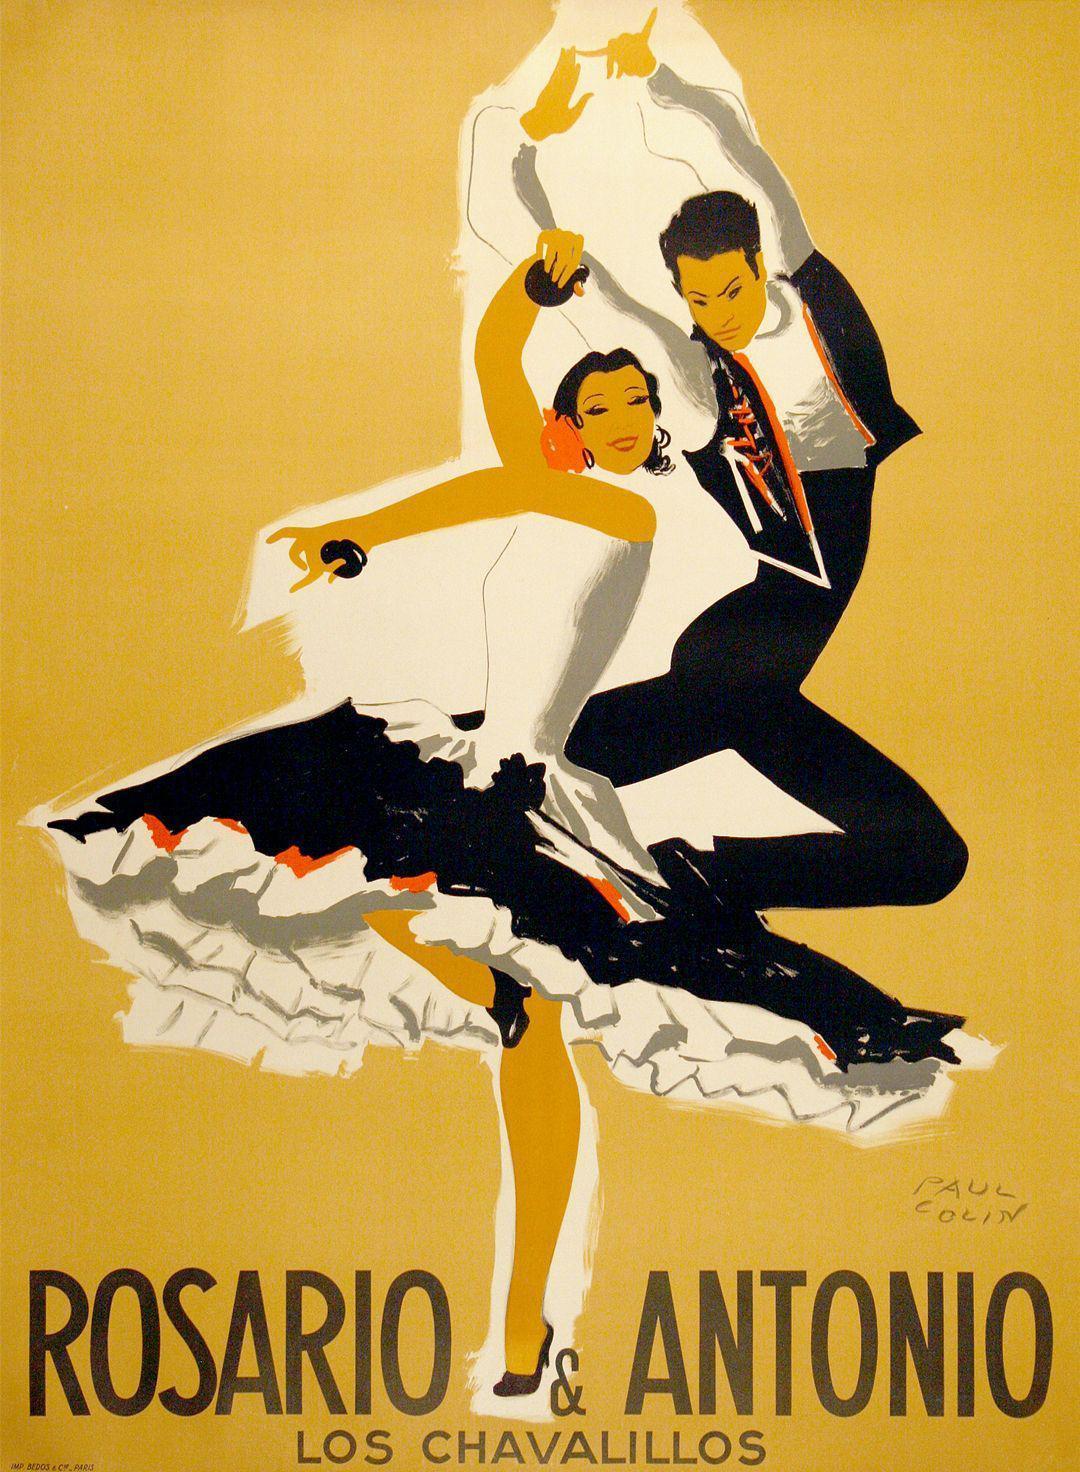 Rosario & Antonio 1949 Original Poster by Paul Colin